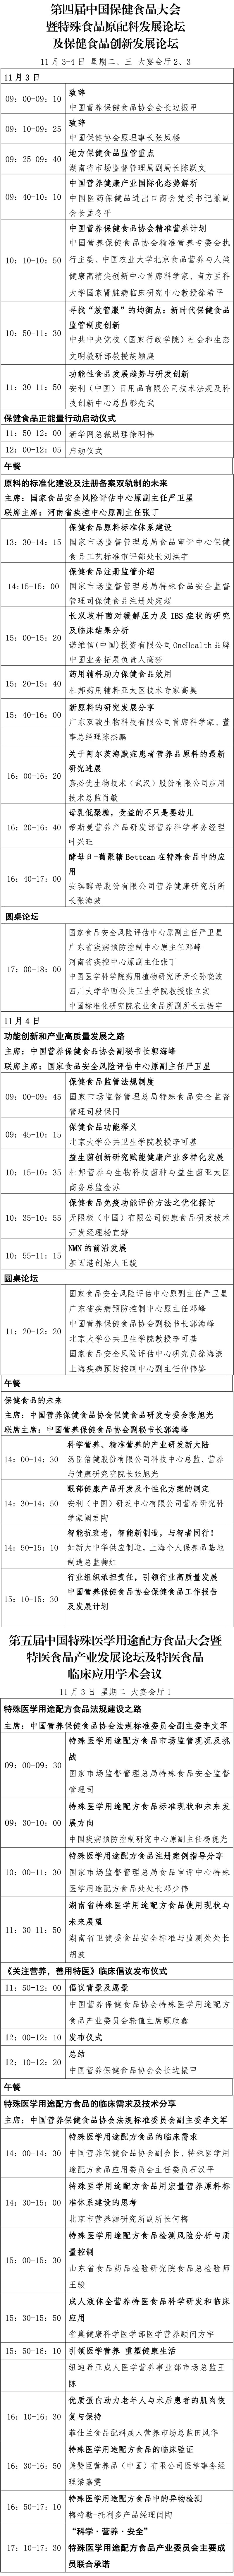 2020中国特殊食品大会日程定稿版10.30（对外）微信-1_02